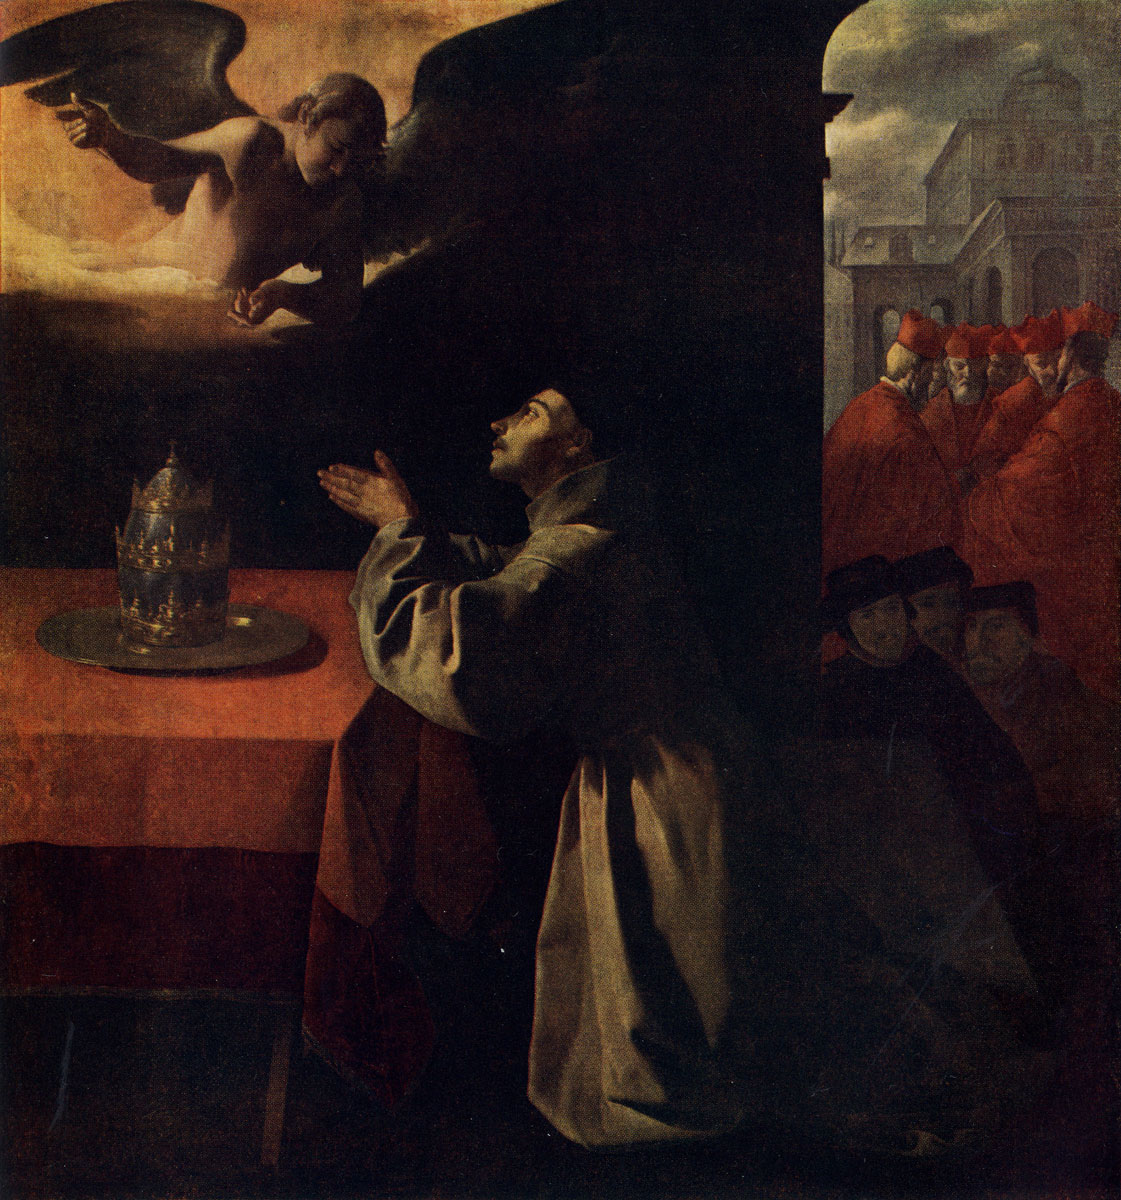 Сурбаран. Молитва св. Бонавентуры. 1629 г. Дрезден, Картинная галлерея.